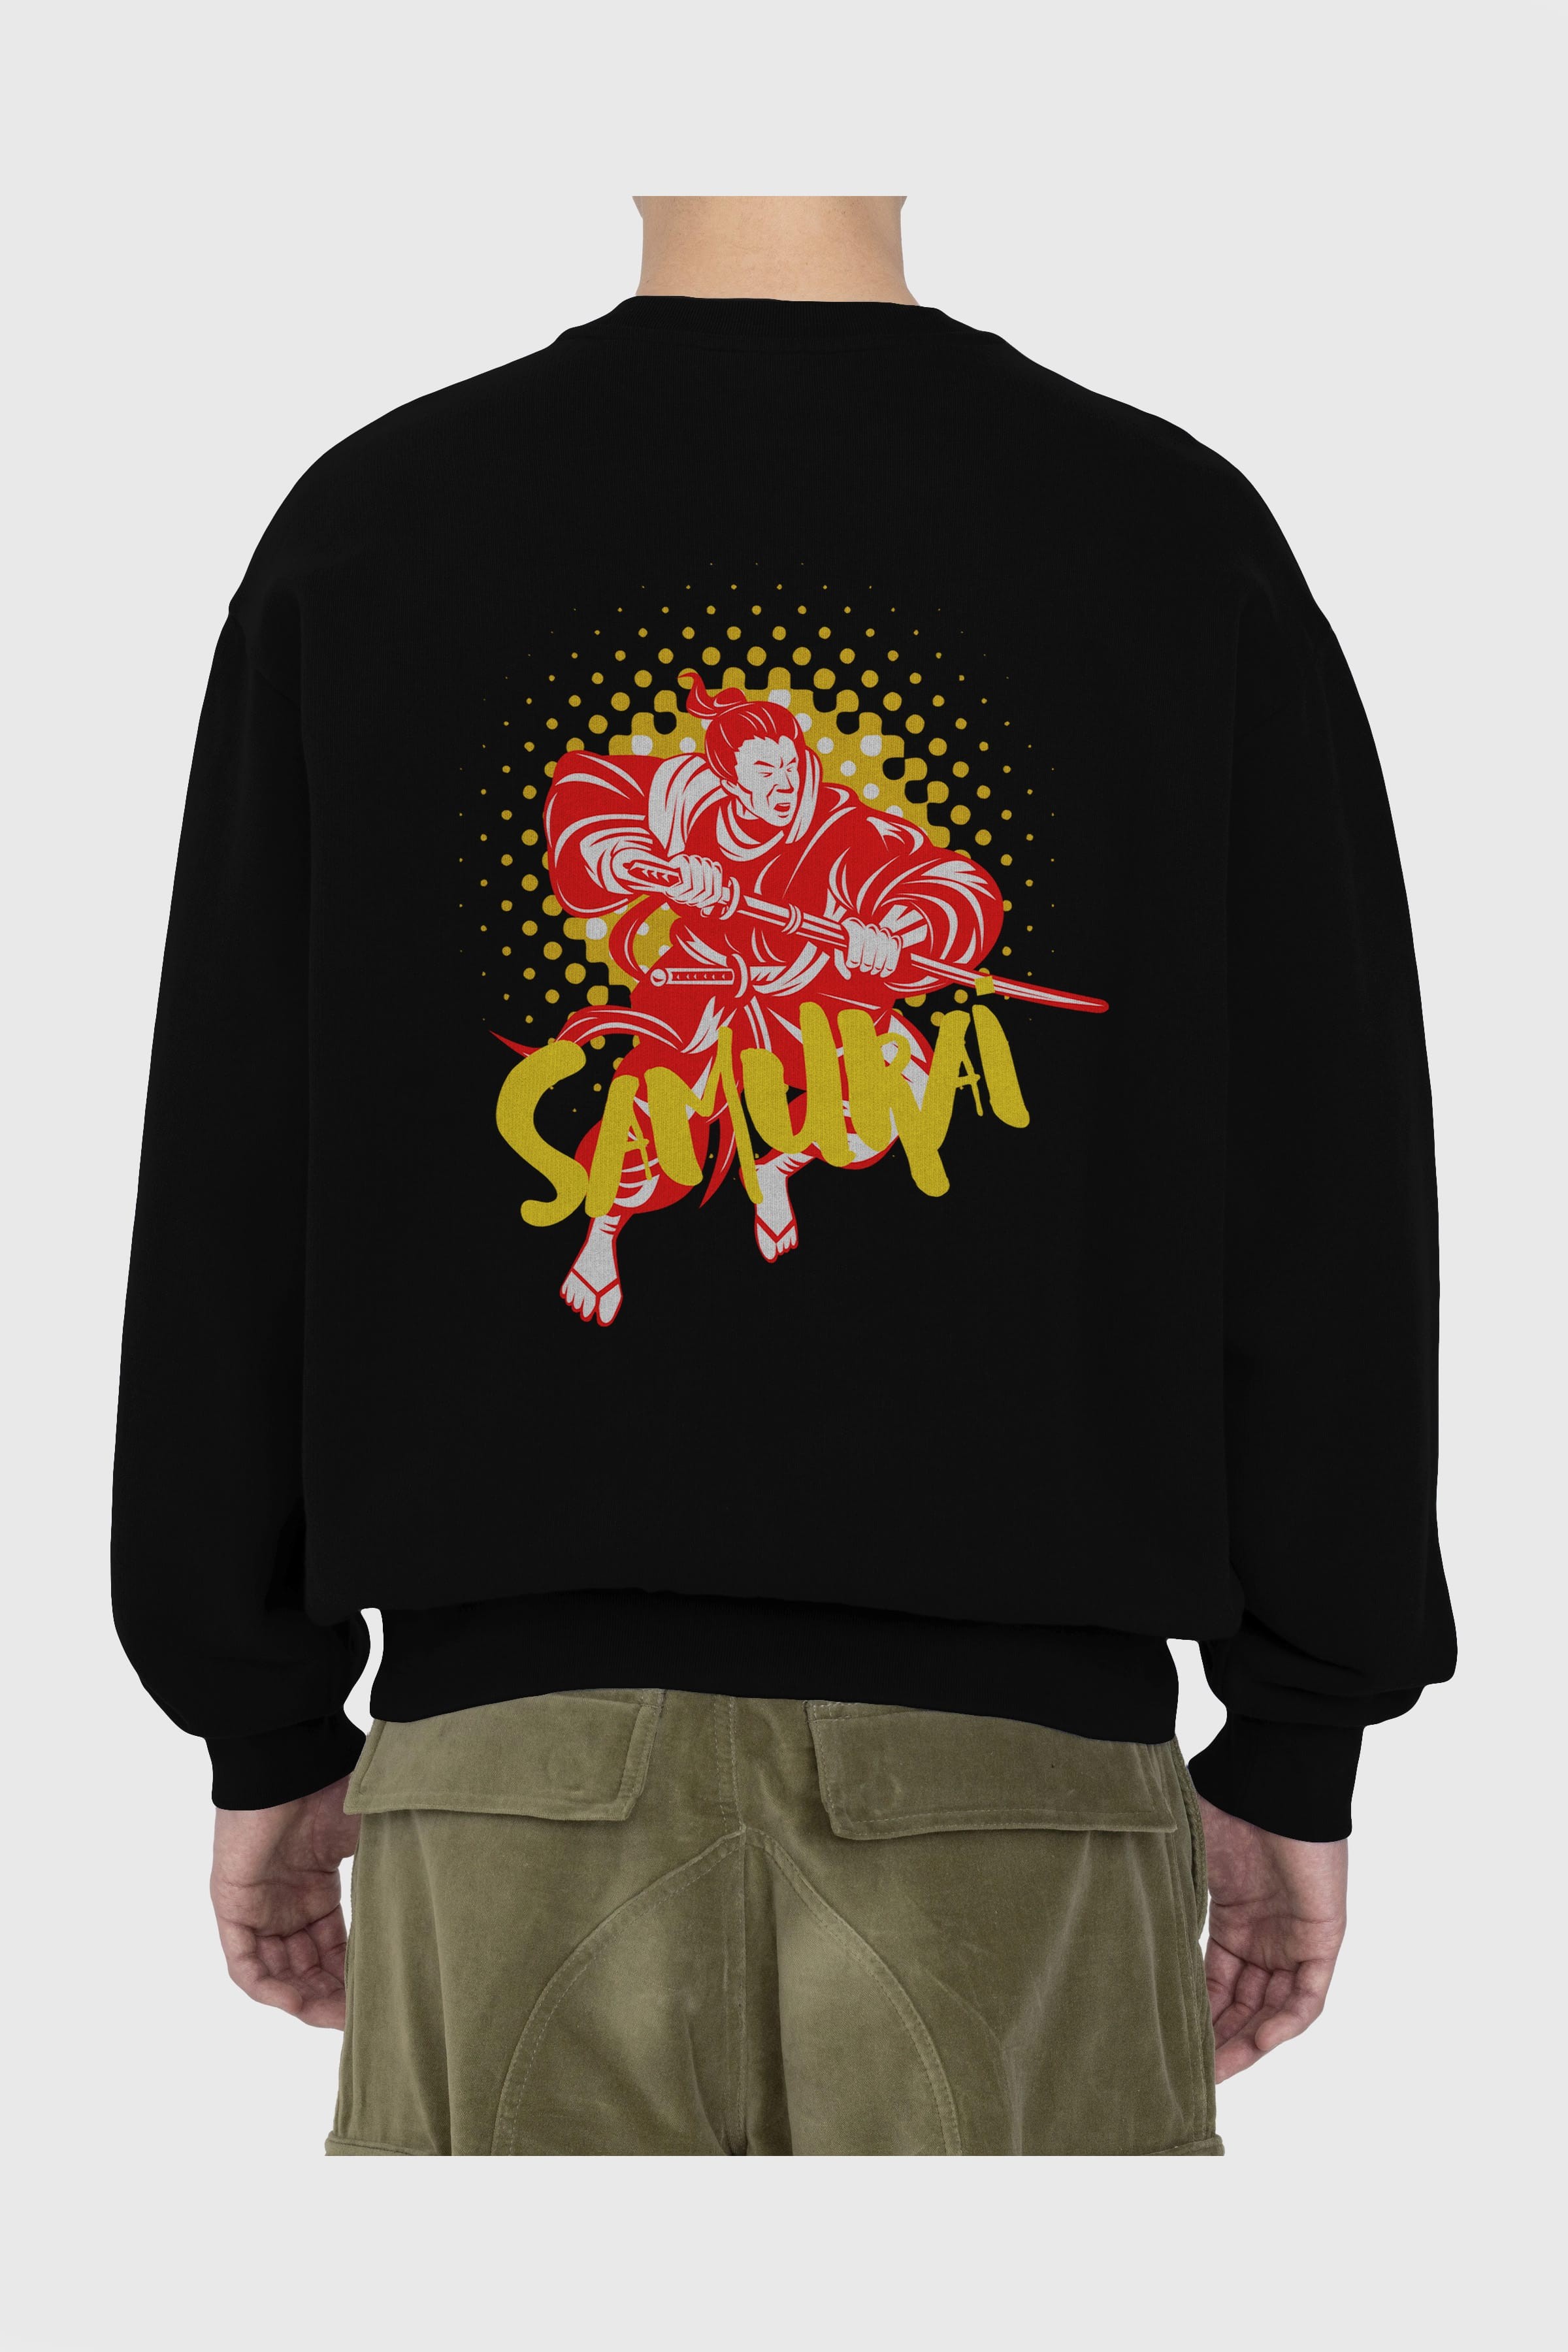 Samurai Arka Baskılı Oversize Sweatshirt Erkek Kadın Unisex